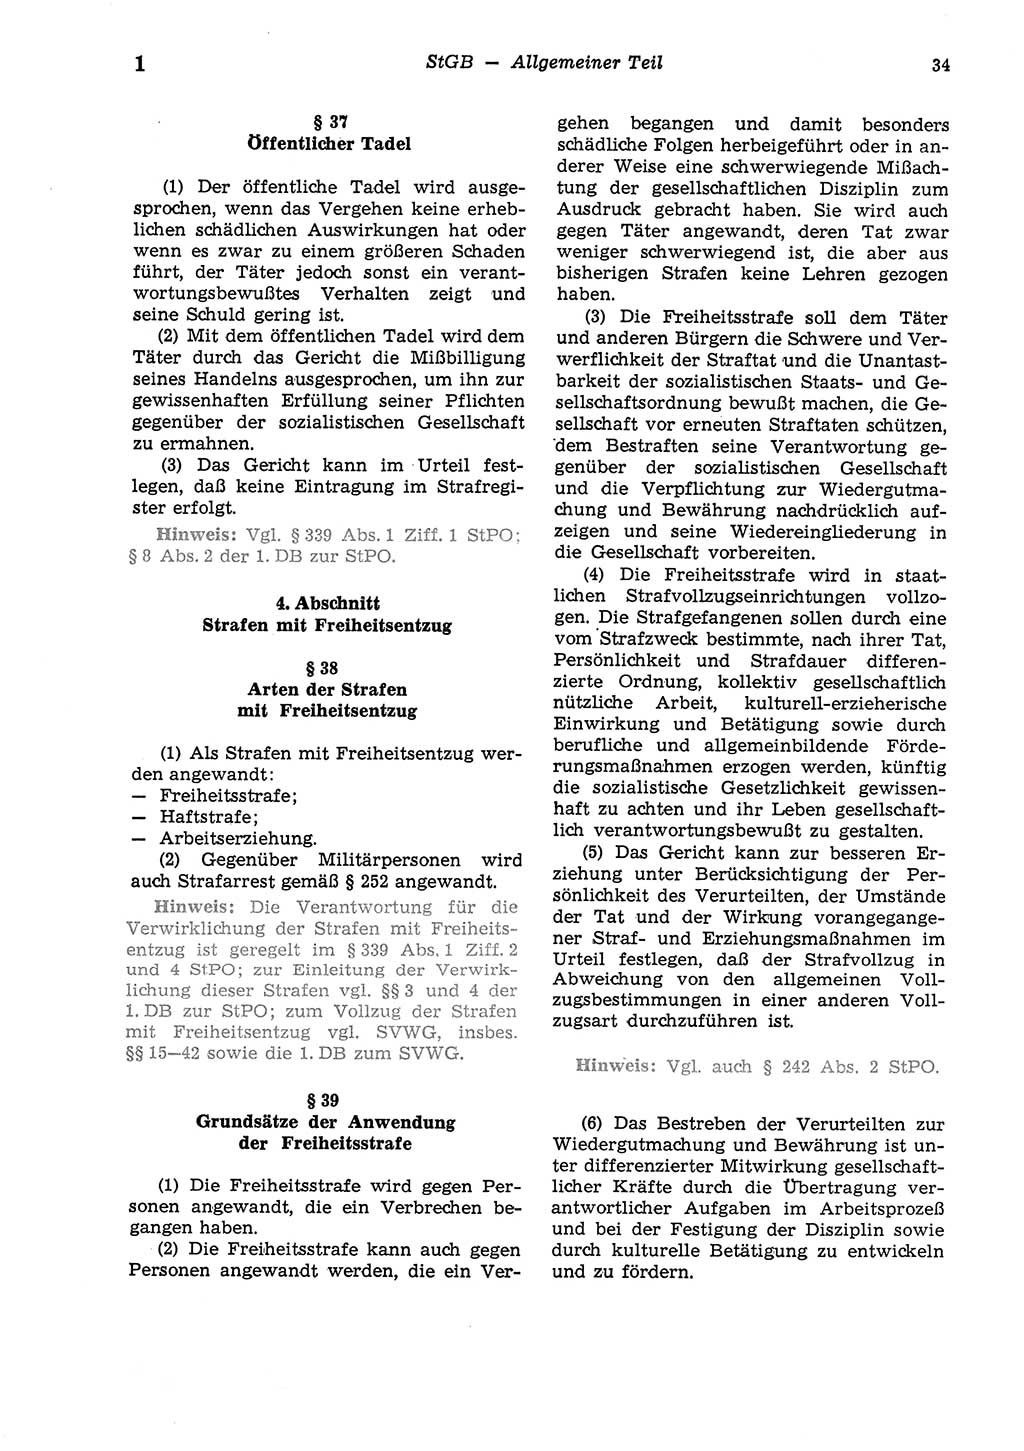 Strafgesetzbuch (StGB) der Deutschen Demokratischen Republik (DDR) und angrenzende Gesetze und Bestimmungen 1975, Seite 34 (StGB DDR Ges. Best. 1975, S. 34)